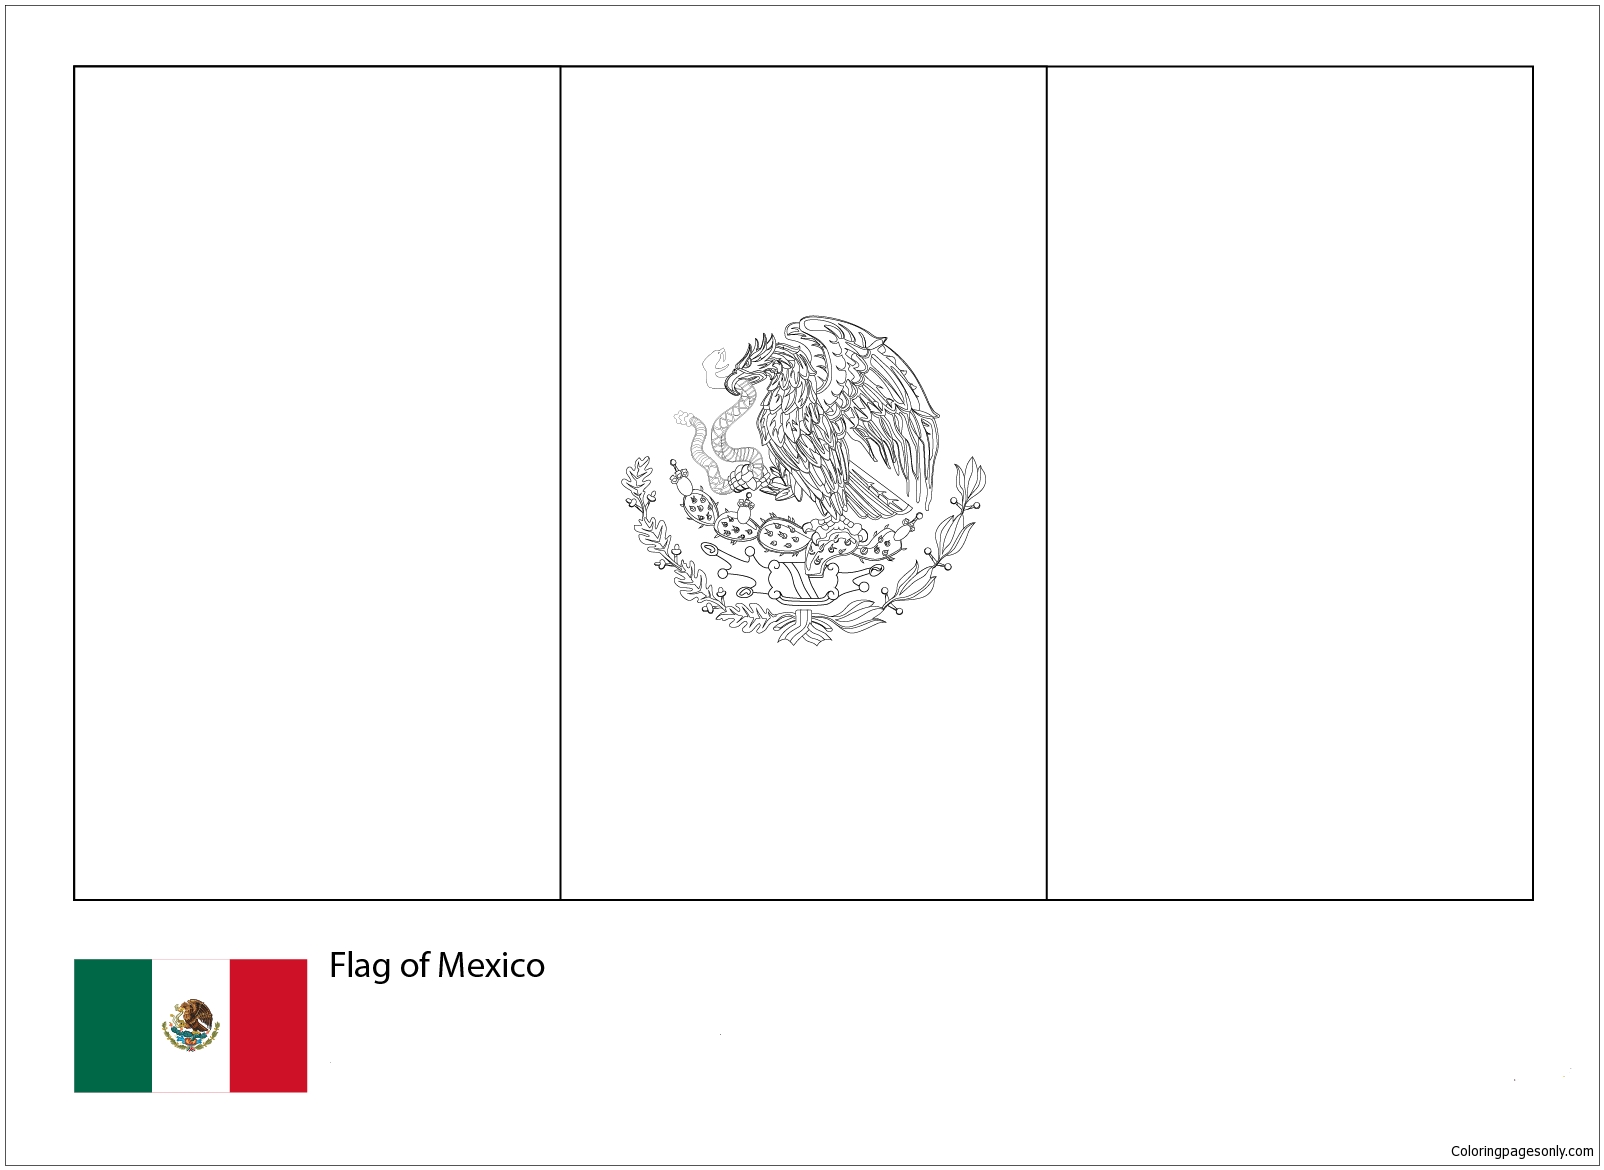 Флаг Мексики-ЧМ-2018 из флагов ЧМ-2018